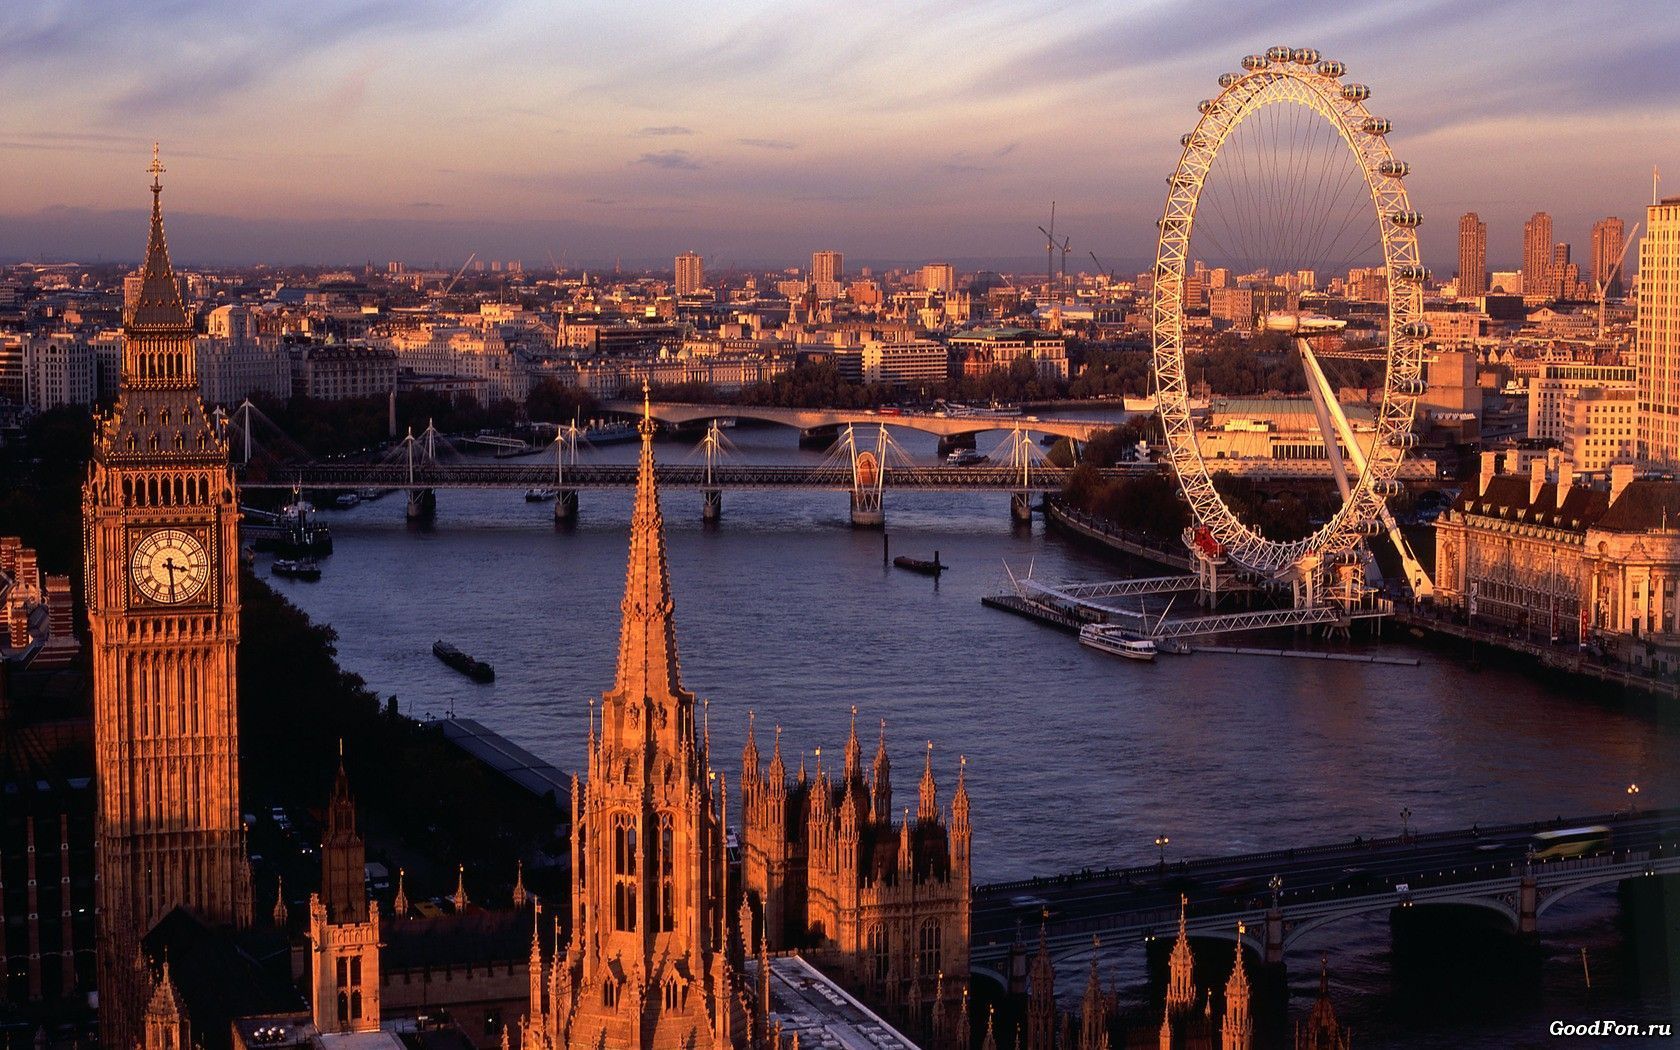 Big ben london eye cityscapes city skyline landscapes